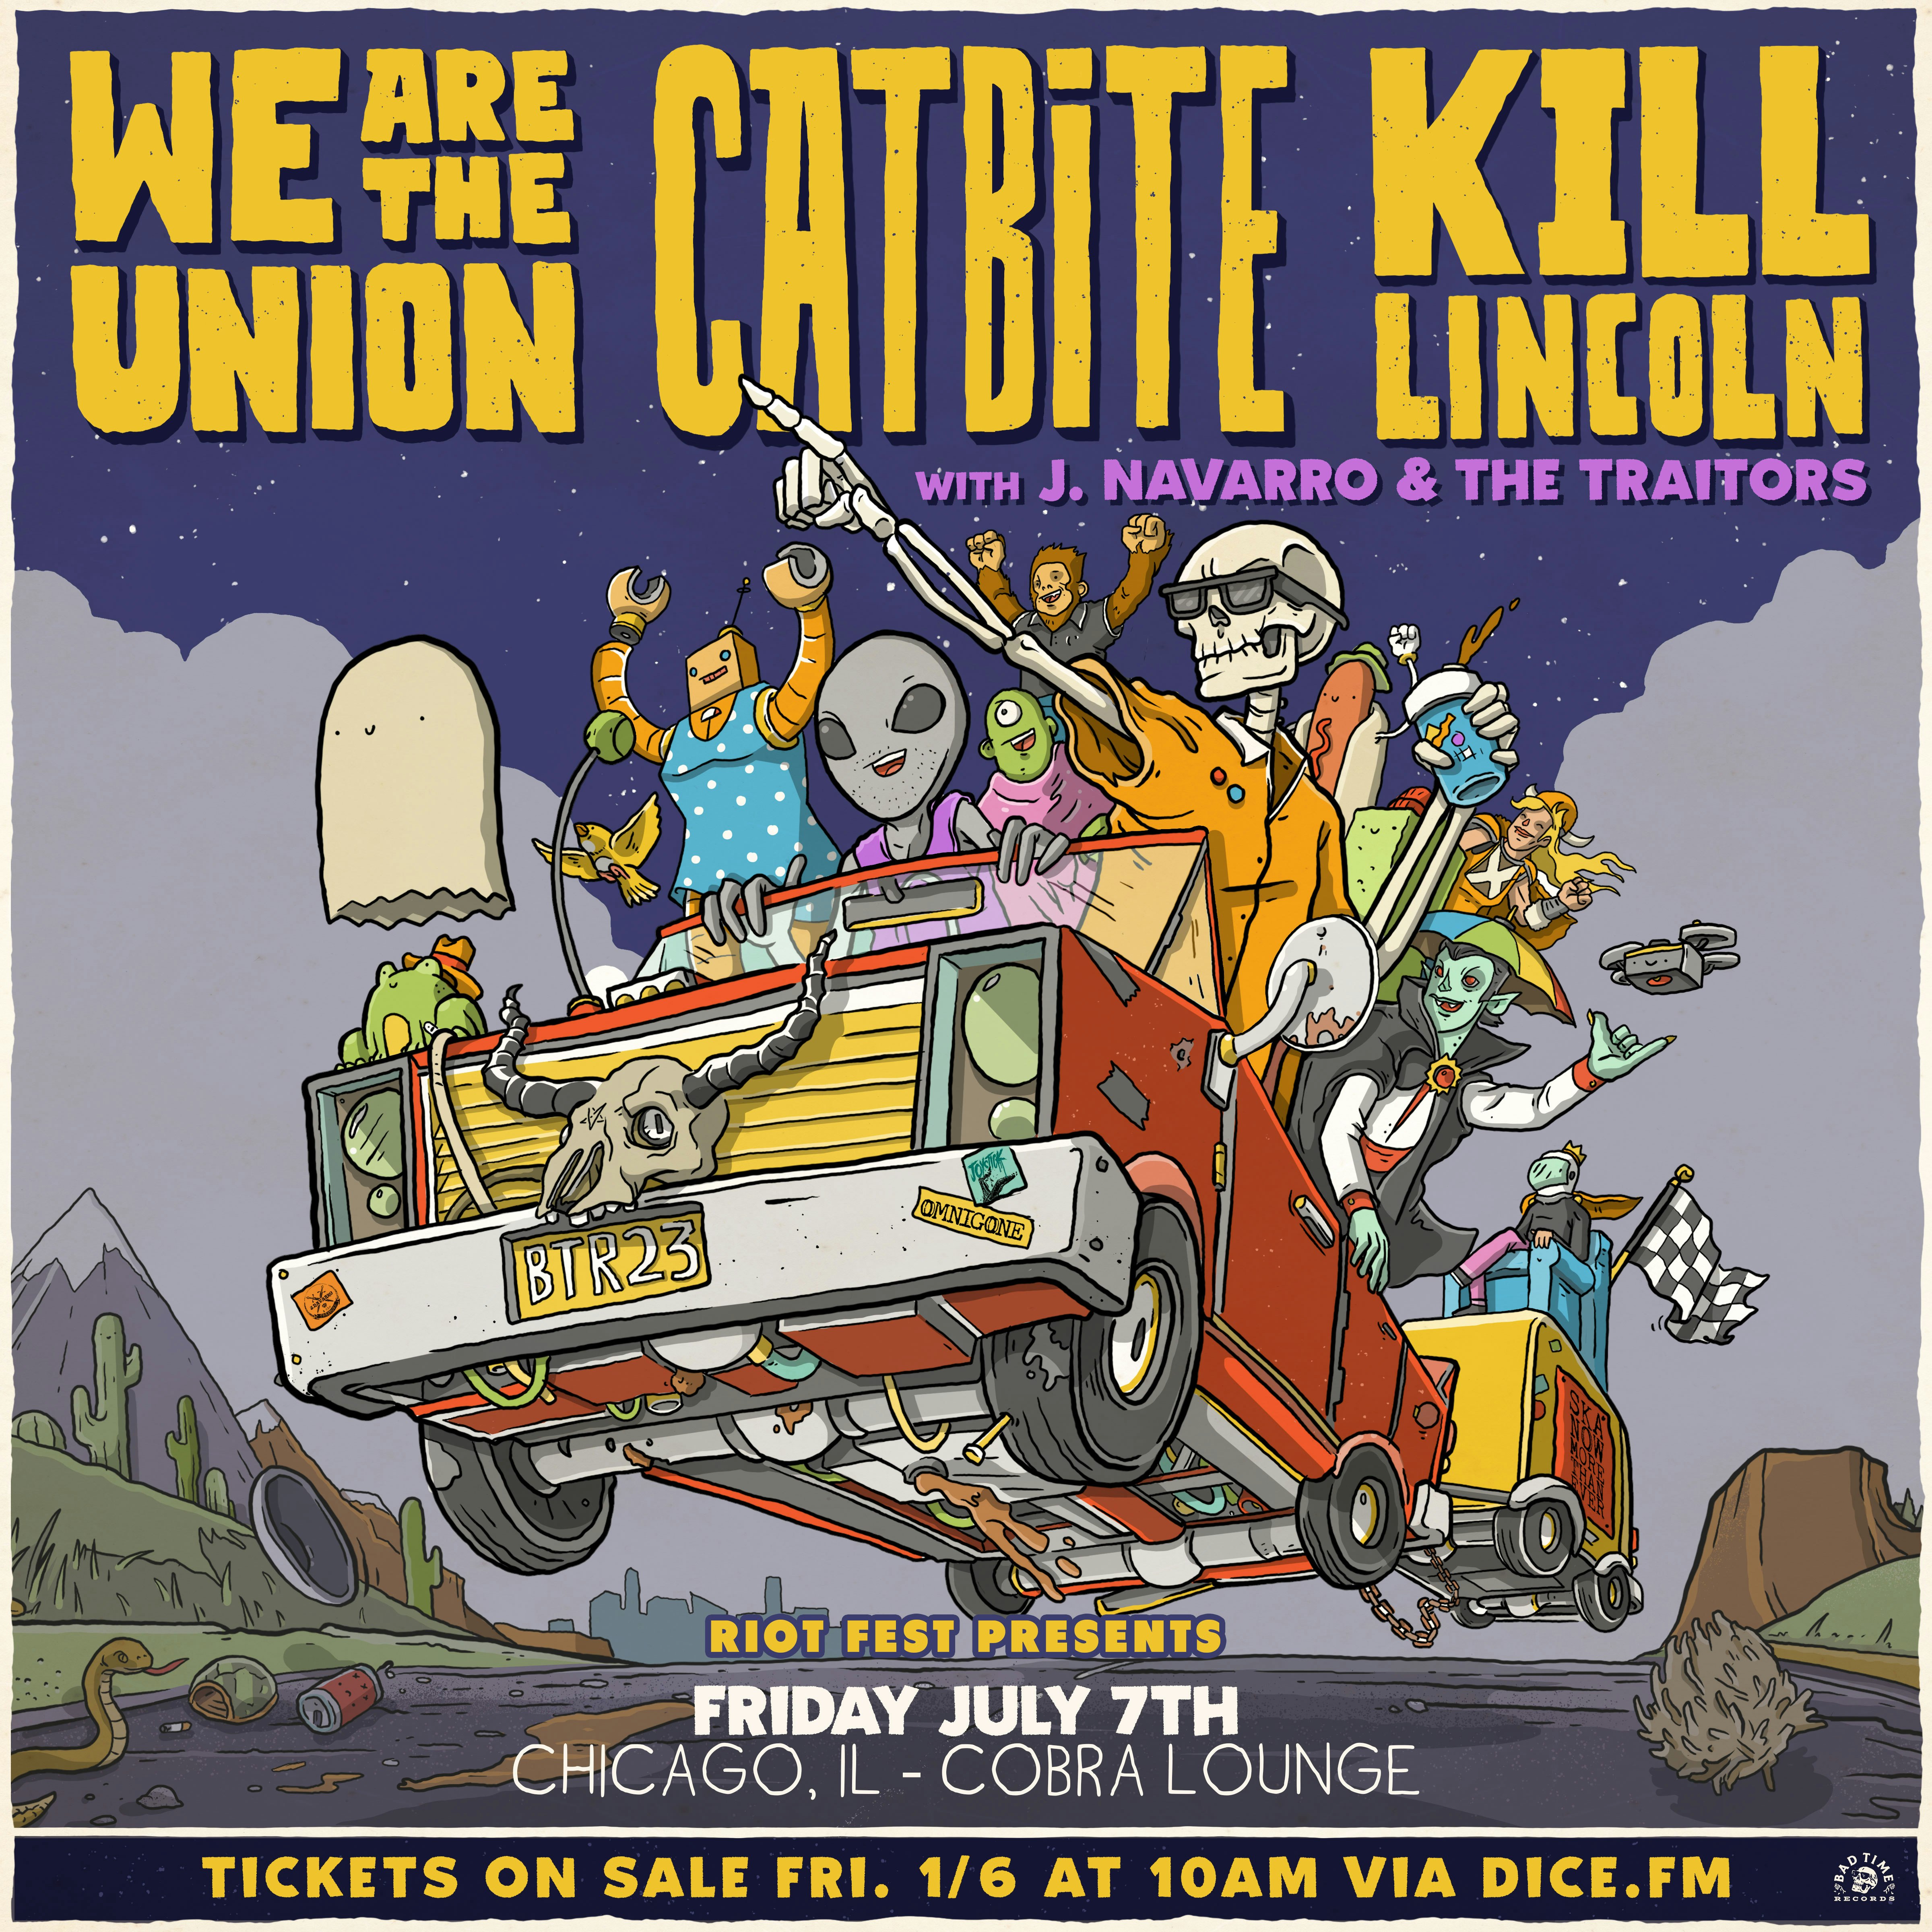 We Are The Union, Catbite, Kill Lincoln